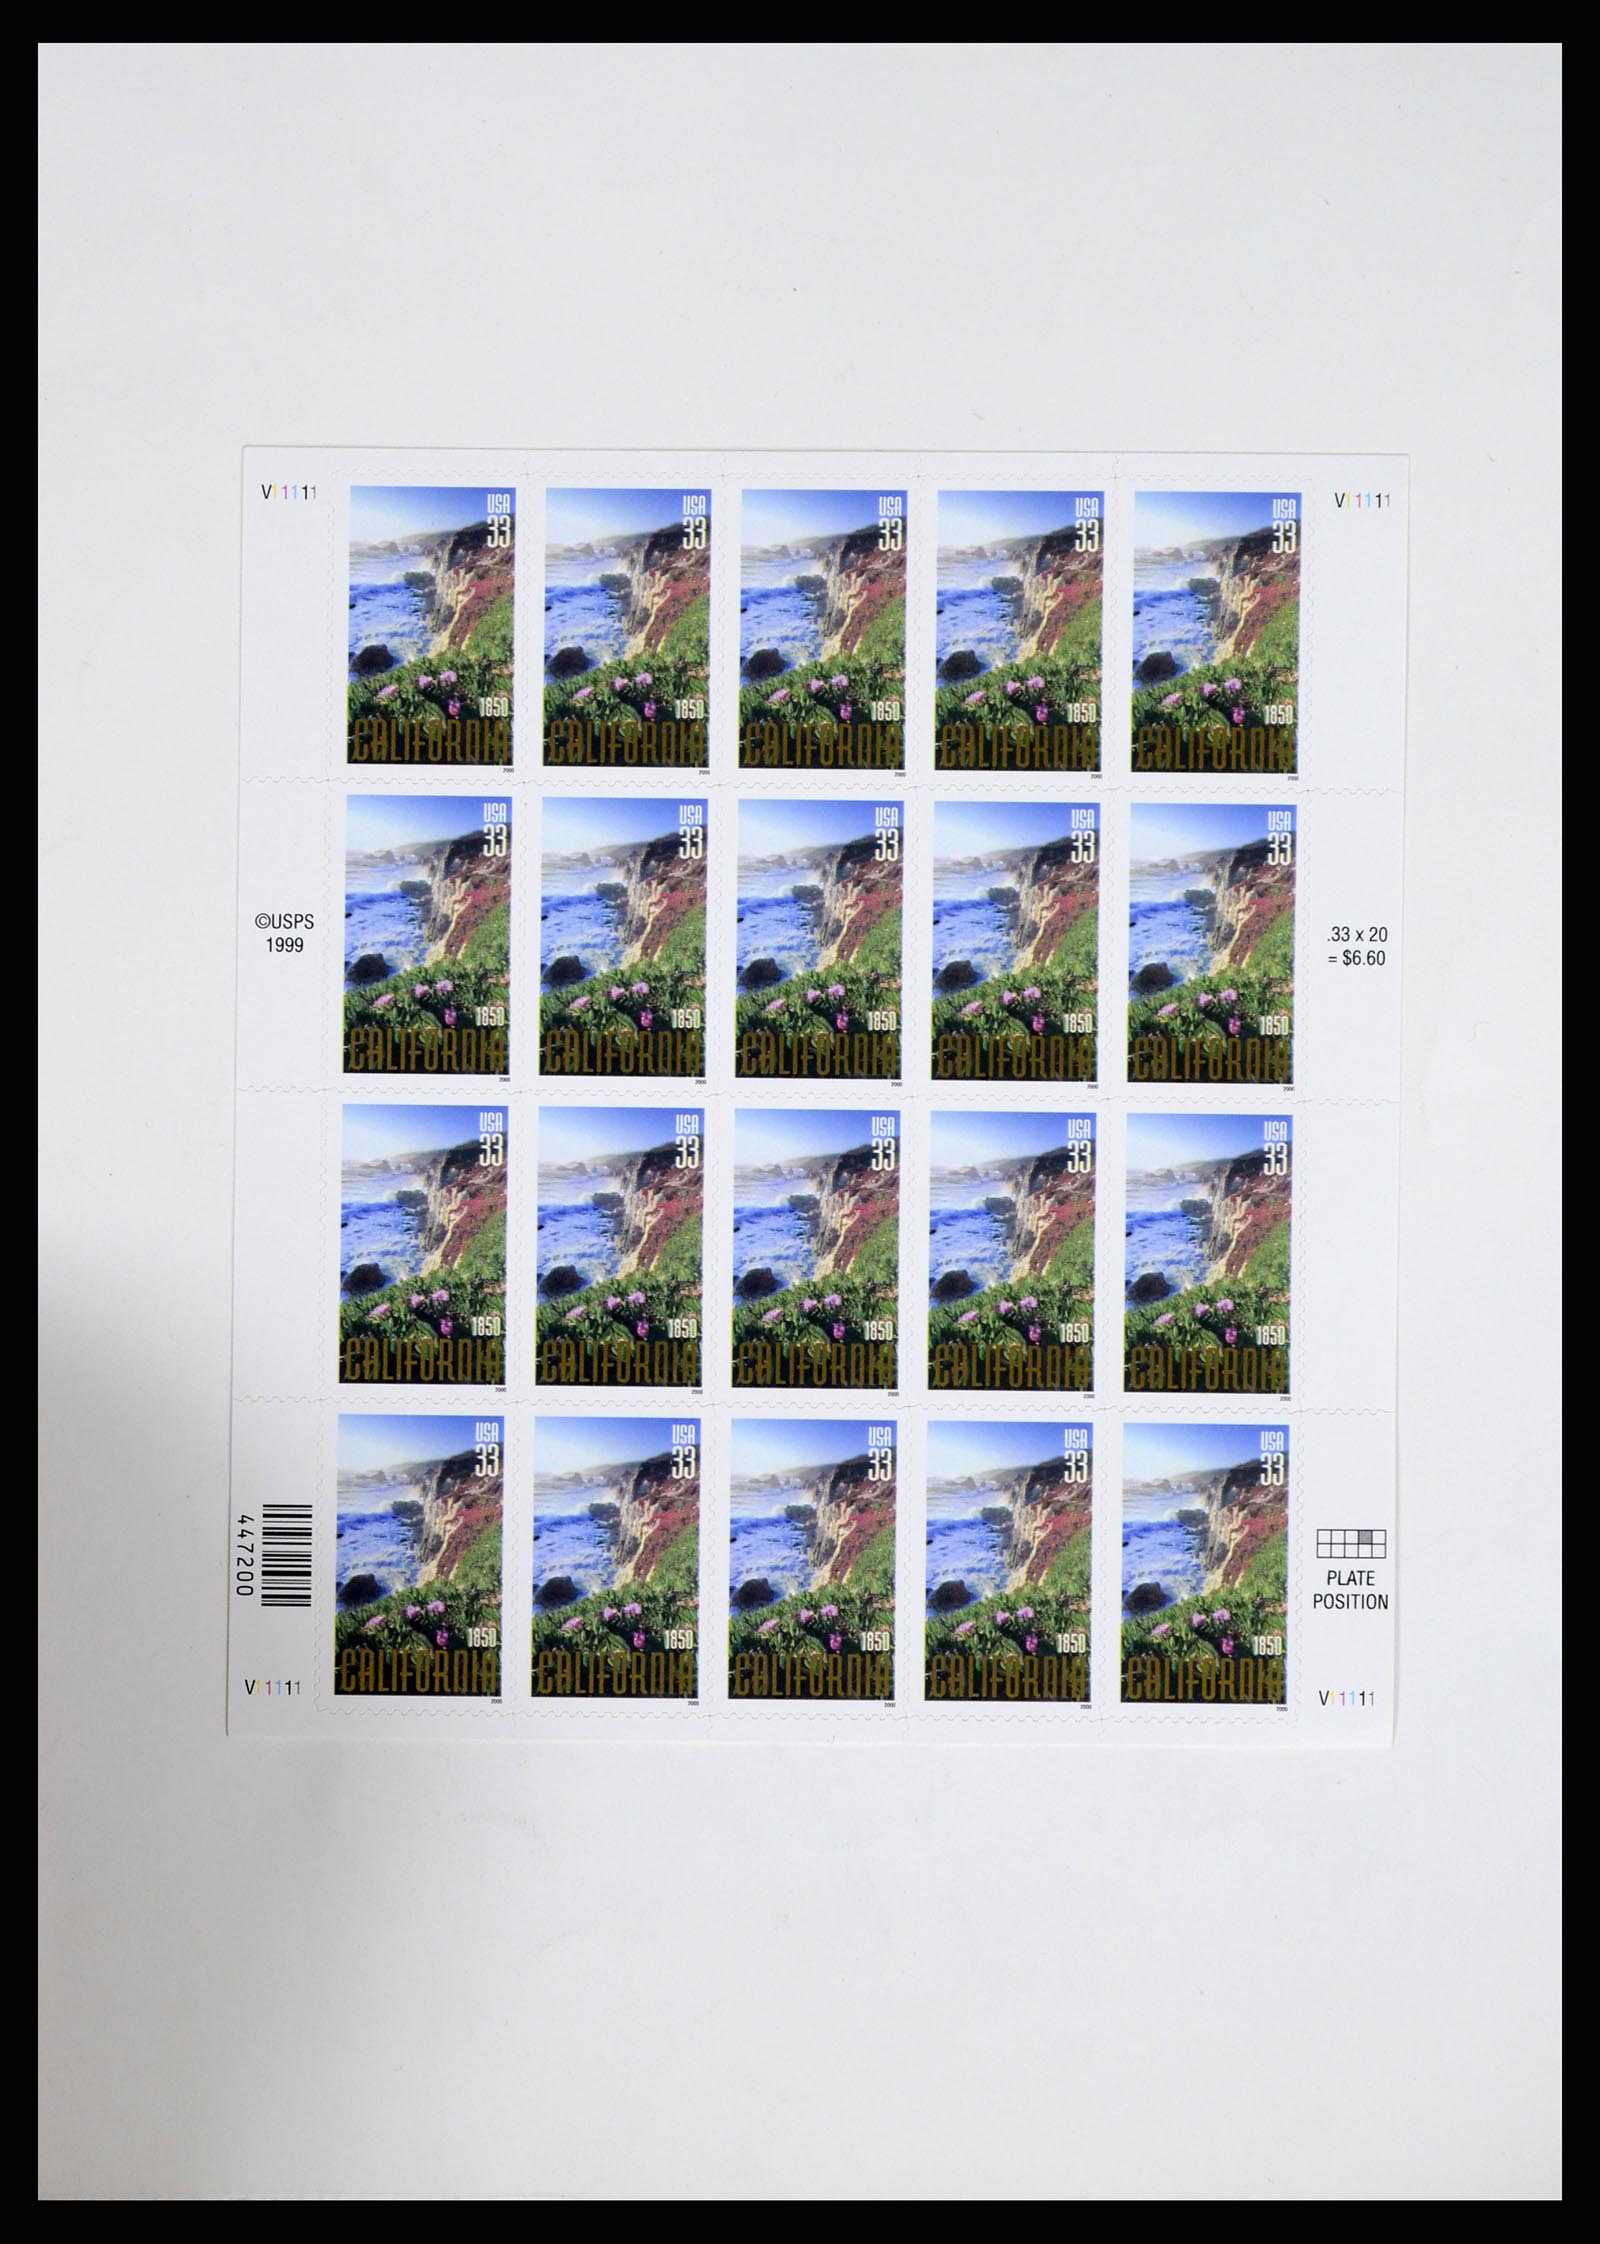 37193 678 - Stamp collection 37193 USA 1970-2020!